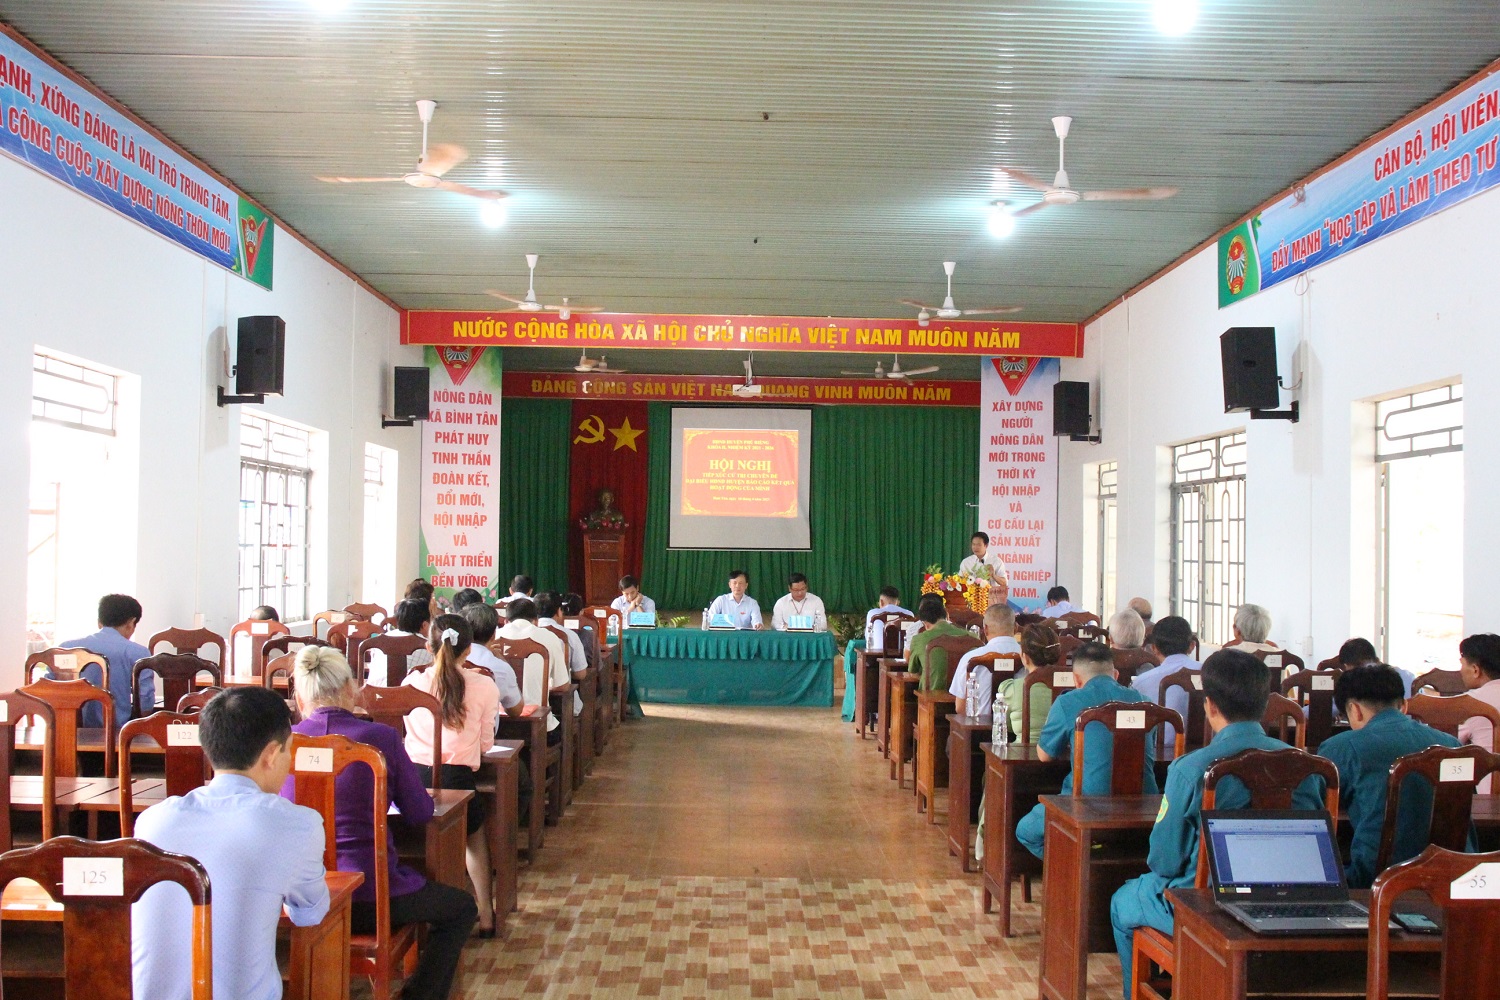 Huyện Phú Riềng tổ chức Hội nghị tiếp xúc cử tri với chuyên đề “Đại biểu HĐND huyện, báo cáo kết quả hoạt động của mình”